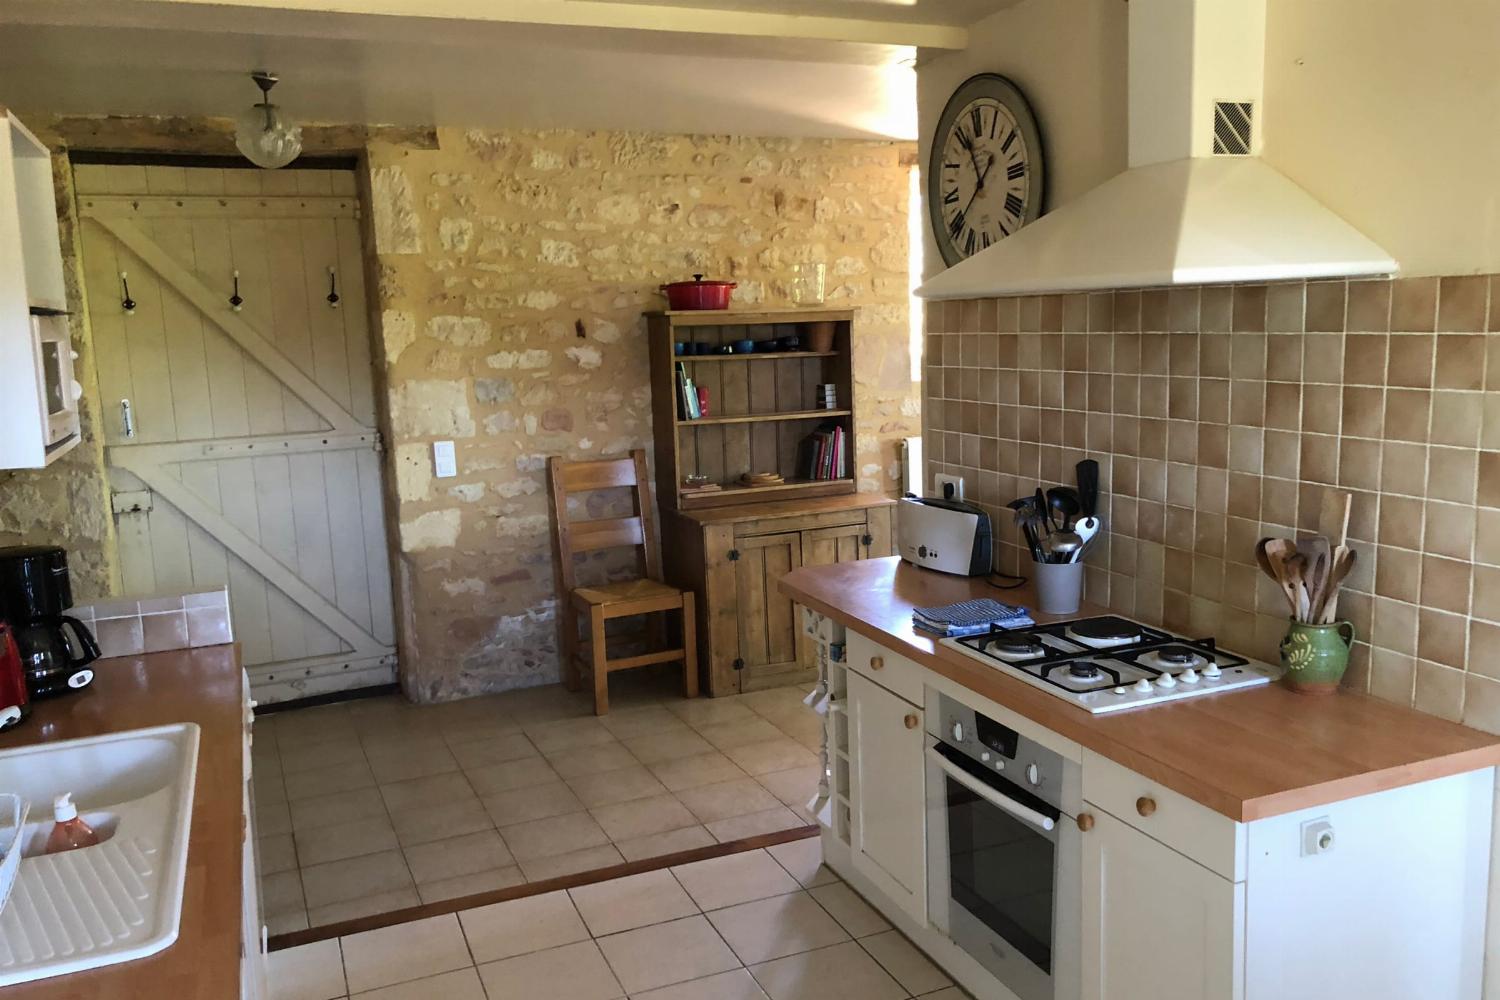 Kitchen | Rental home in Dordogne